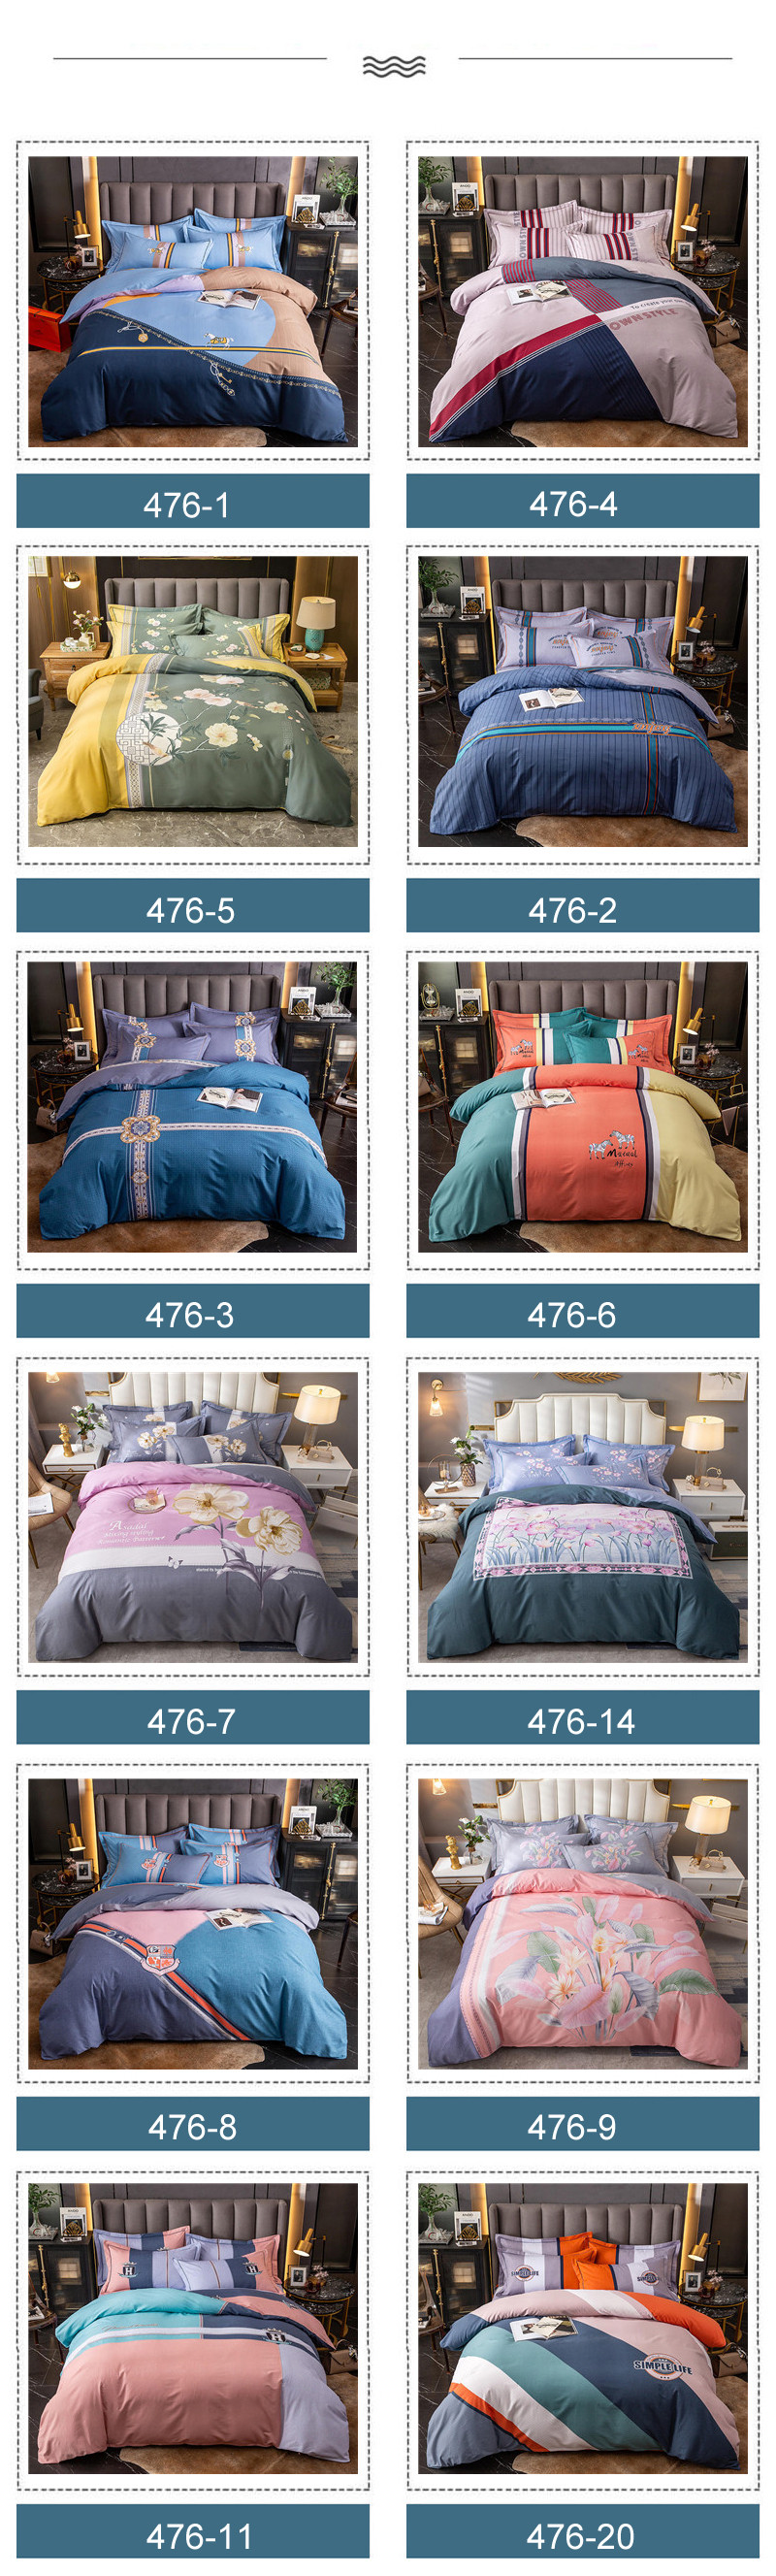 Online Cheap Bed Linen King